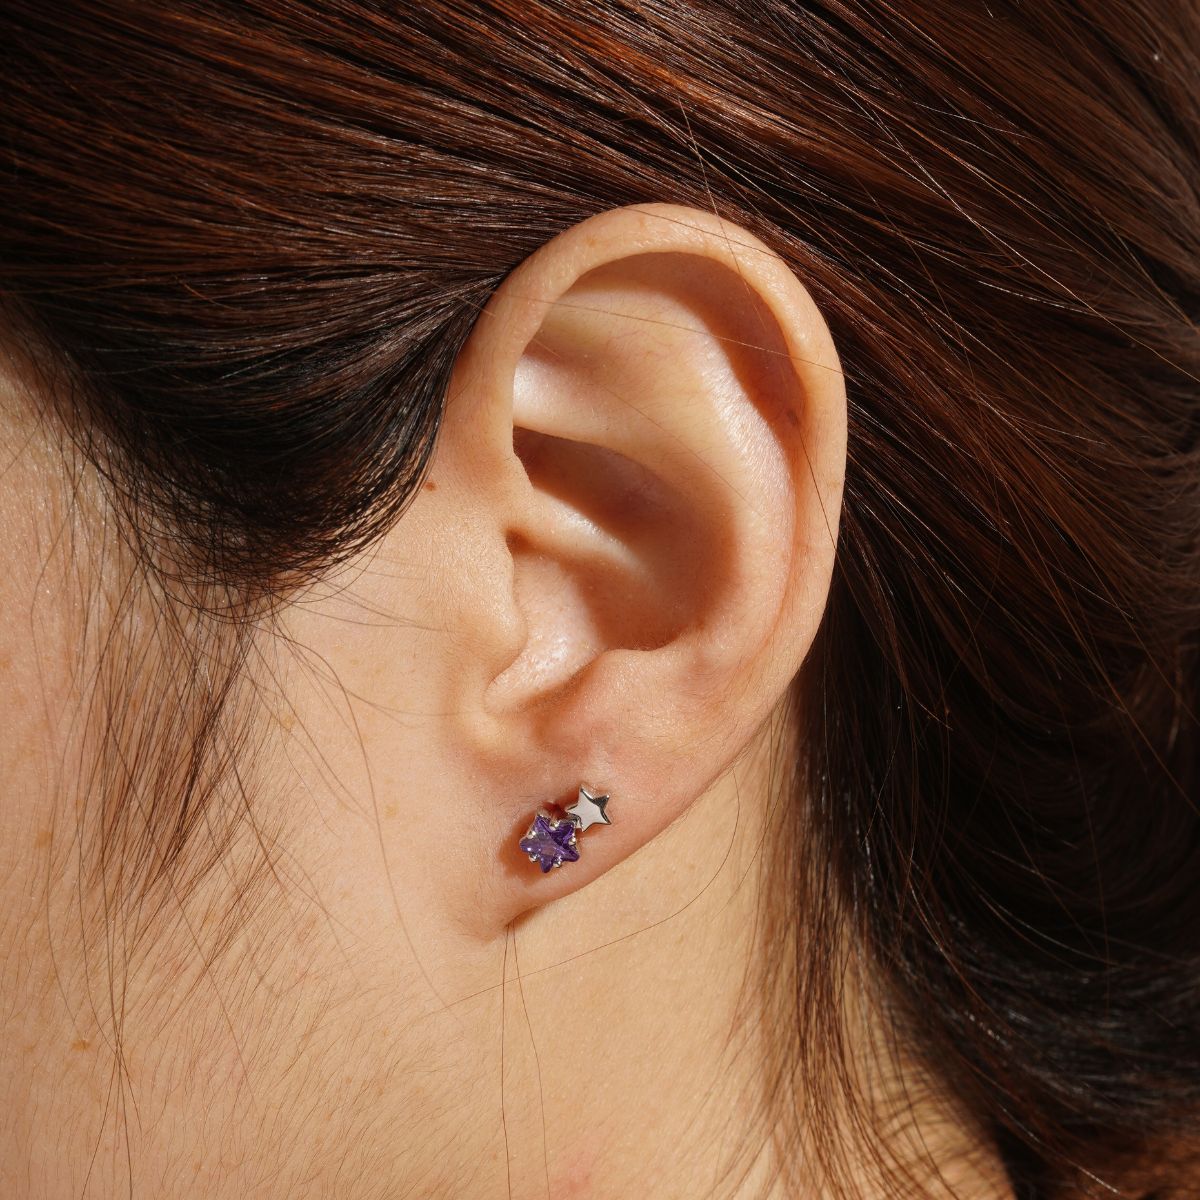 boucles d'oreilles argent. Puce d'oreille argent et pierre violette